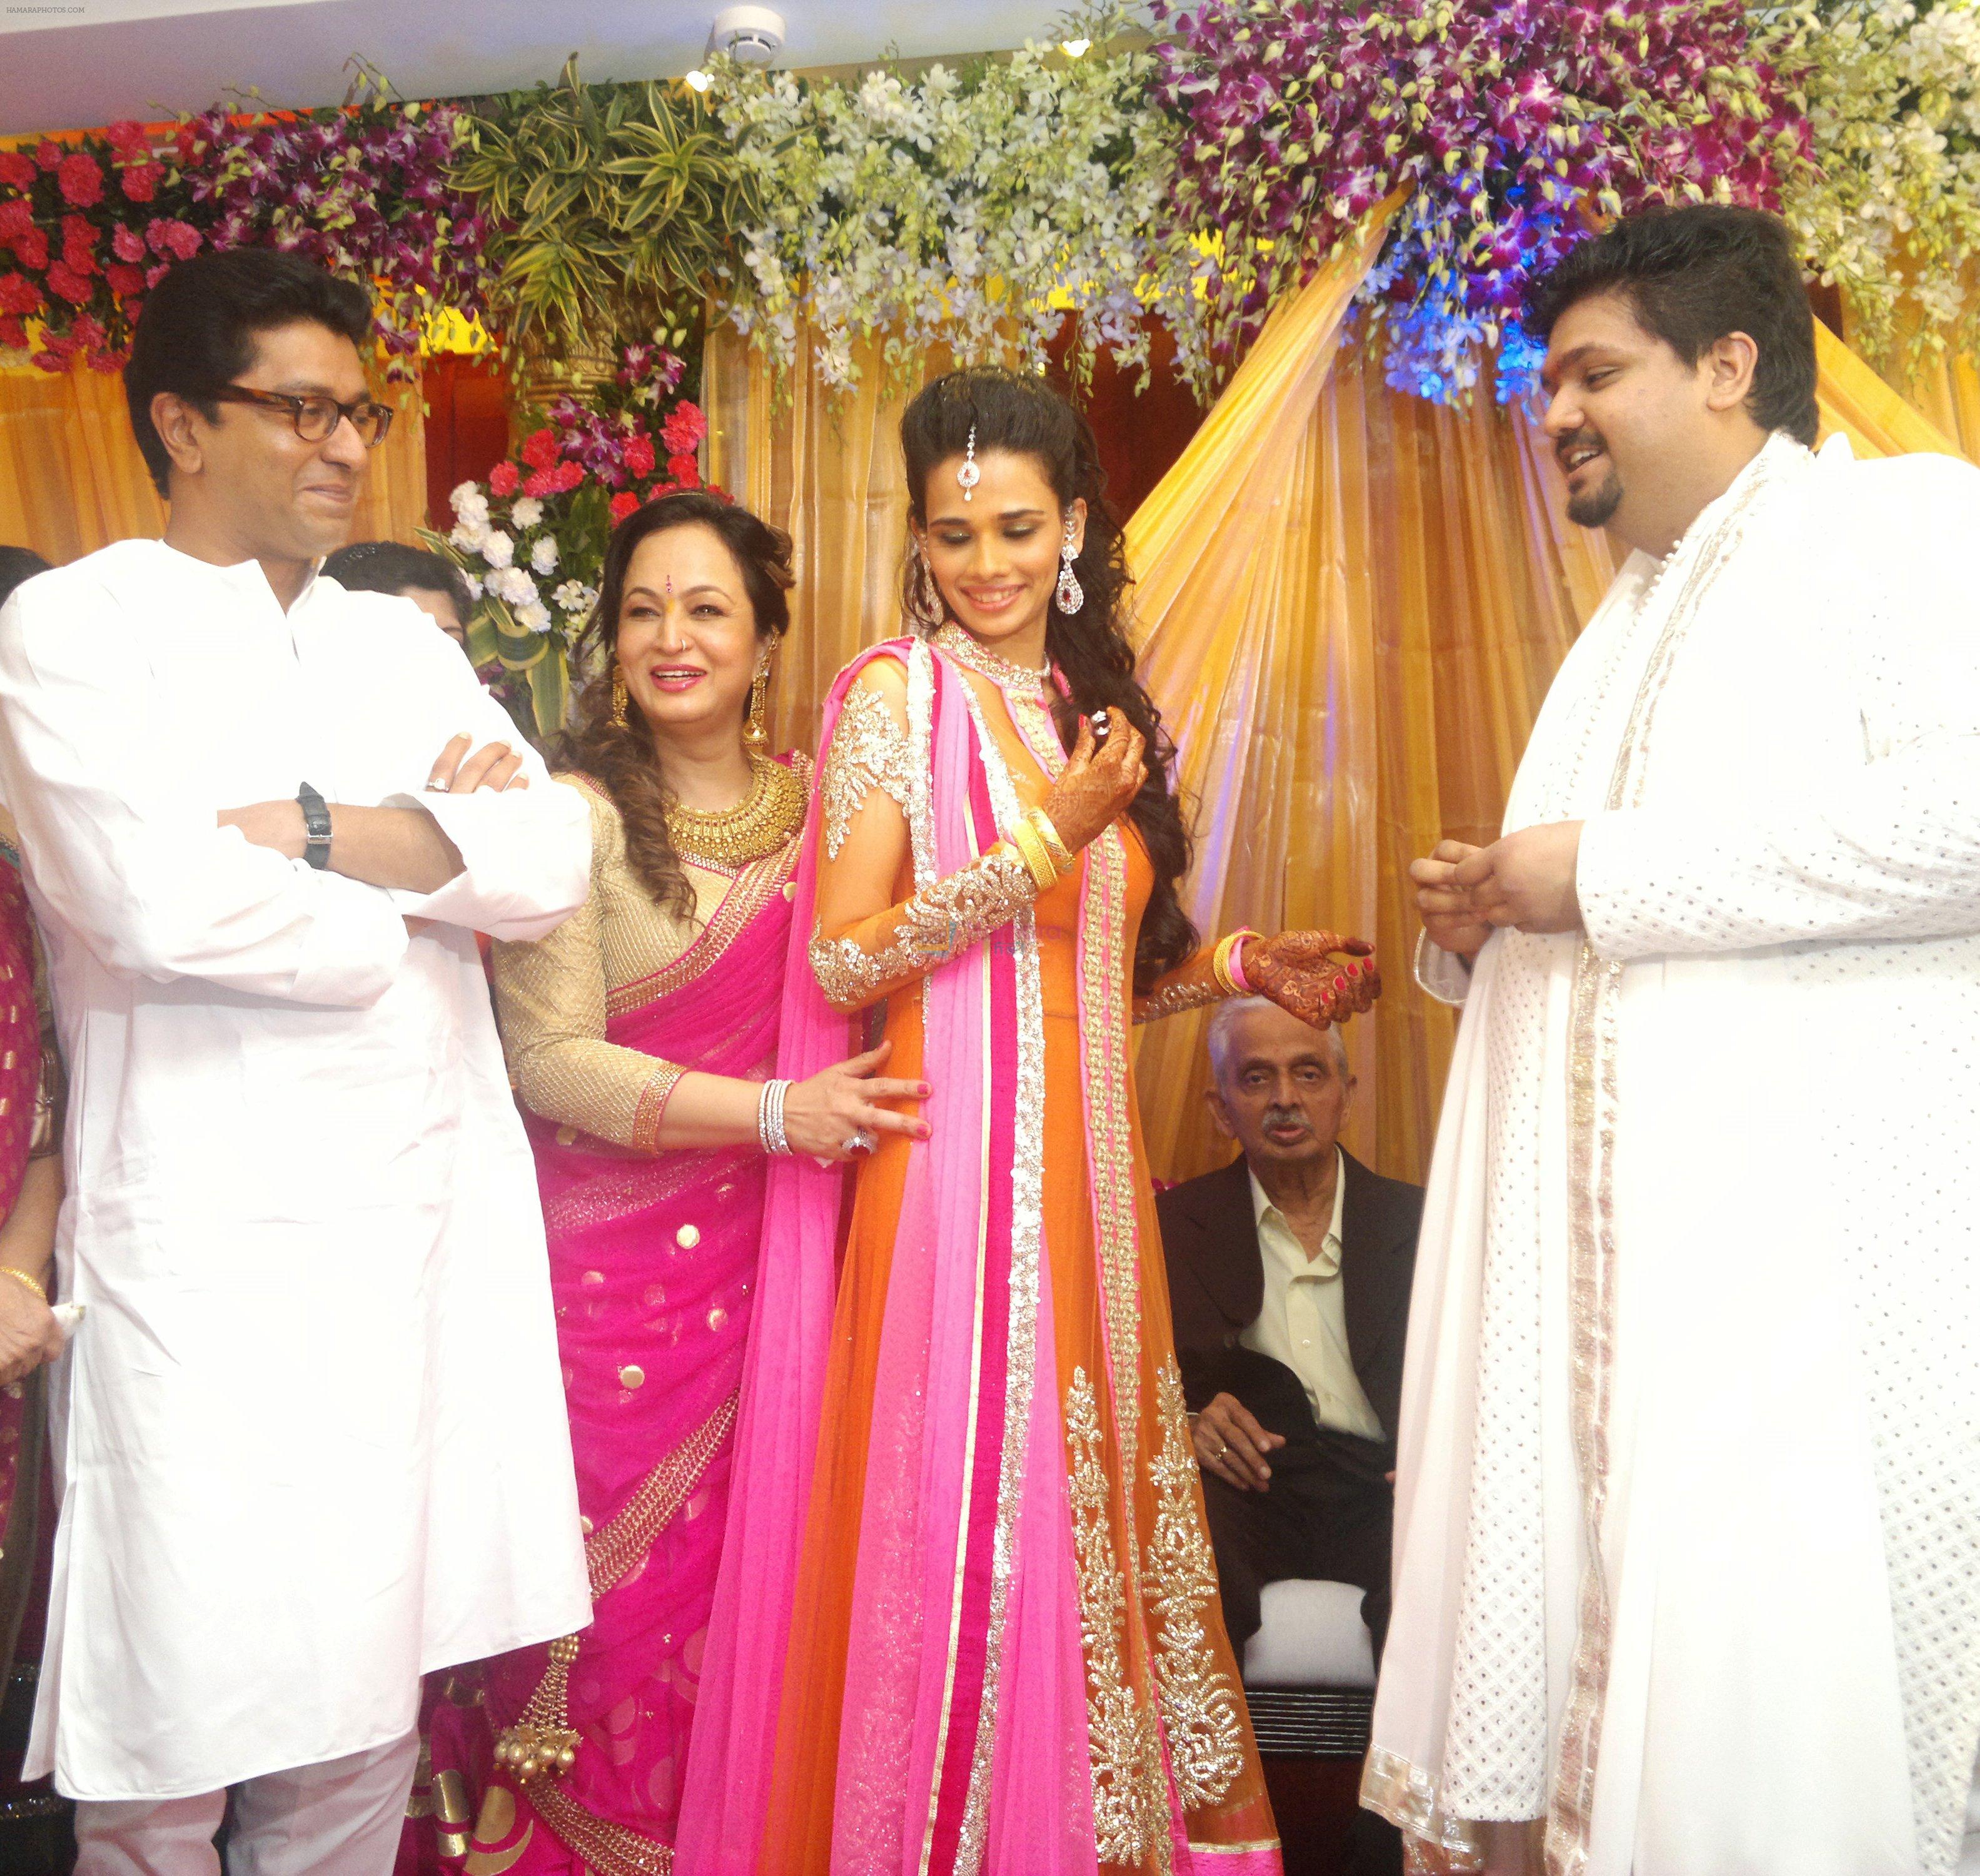 raj thackeray, smita thackeray, aditi redkar and rahul thackray share a moment at the rahul-aditi engagement